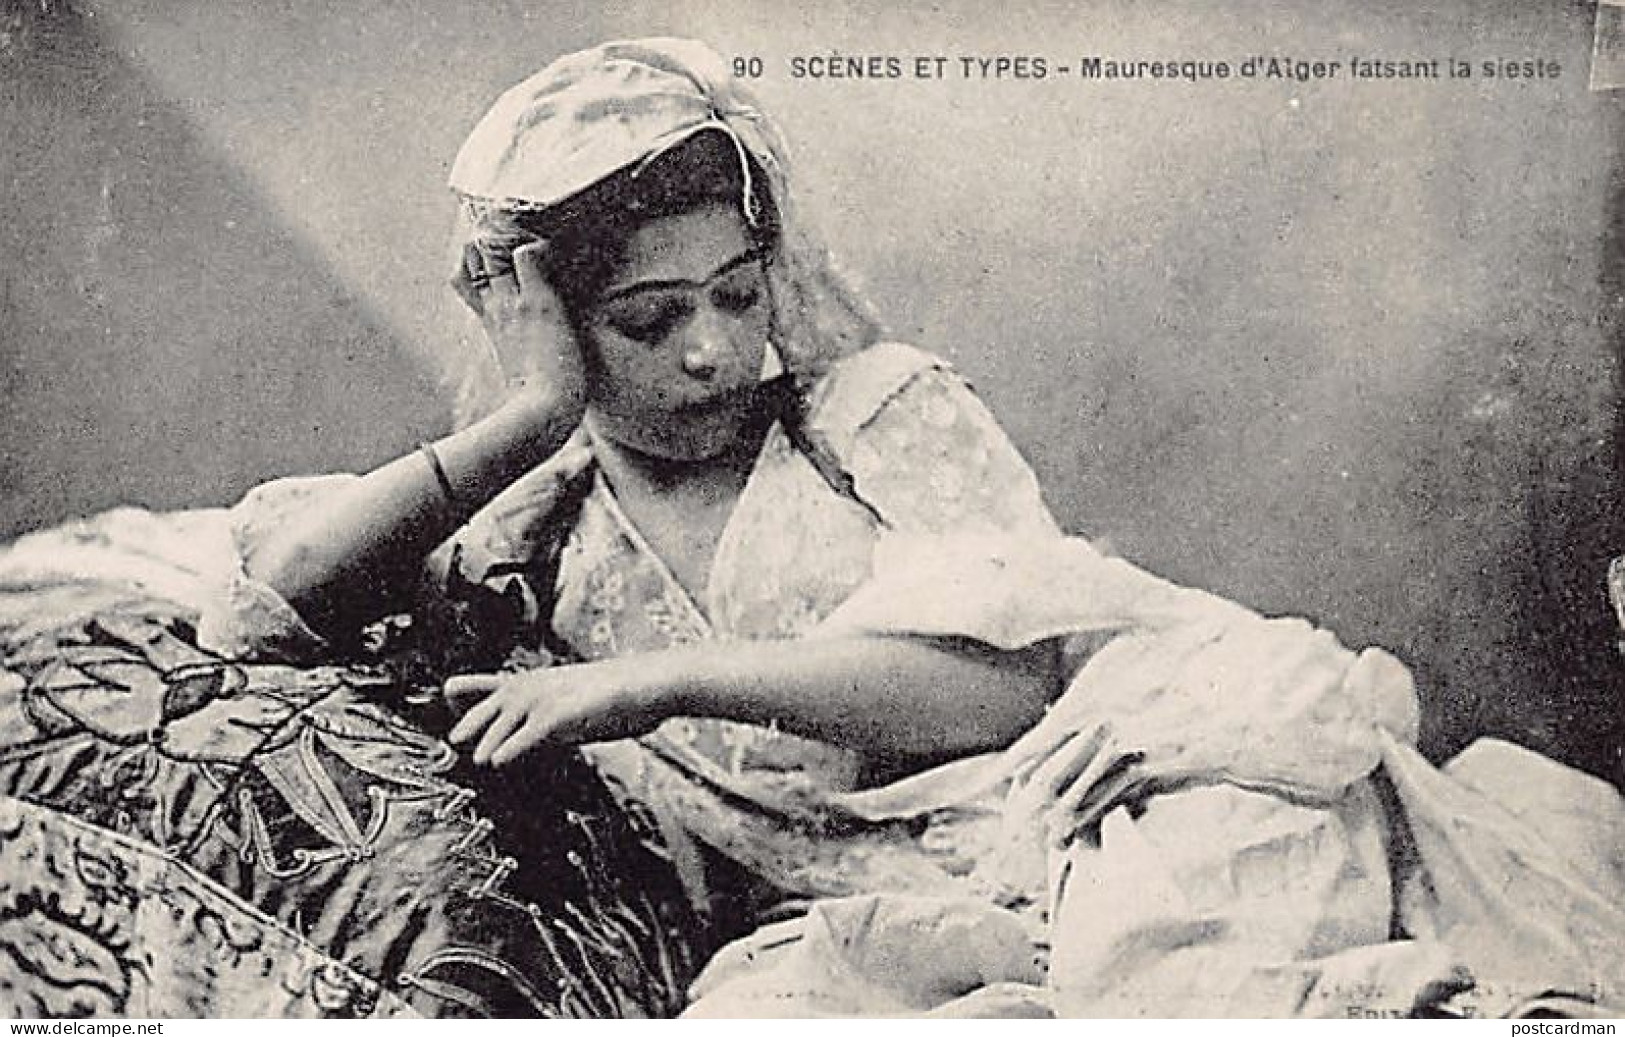 ALGÉRIE - Mauresque D'Alger Faisant La Sieste - Ed. Coll. Id. P.S. 90 - Femmes